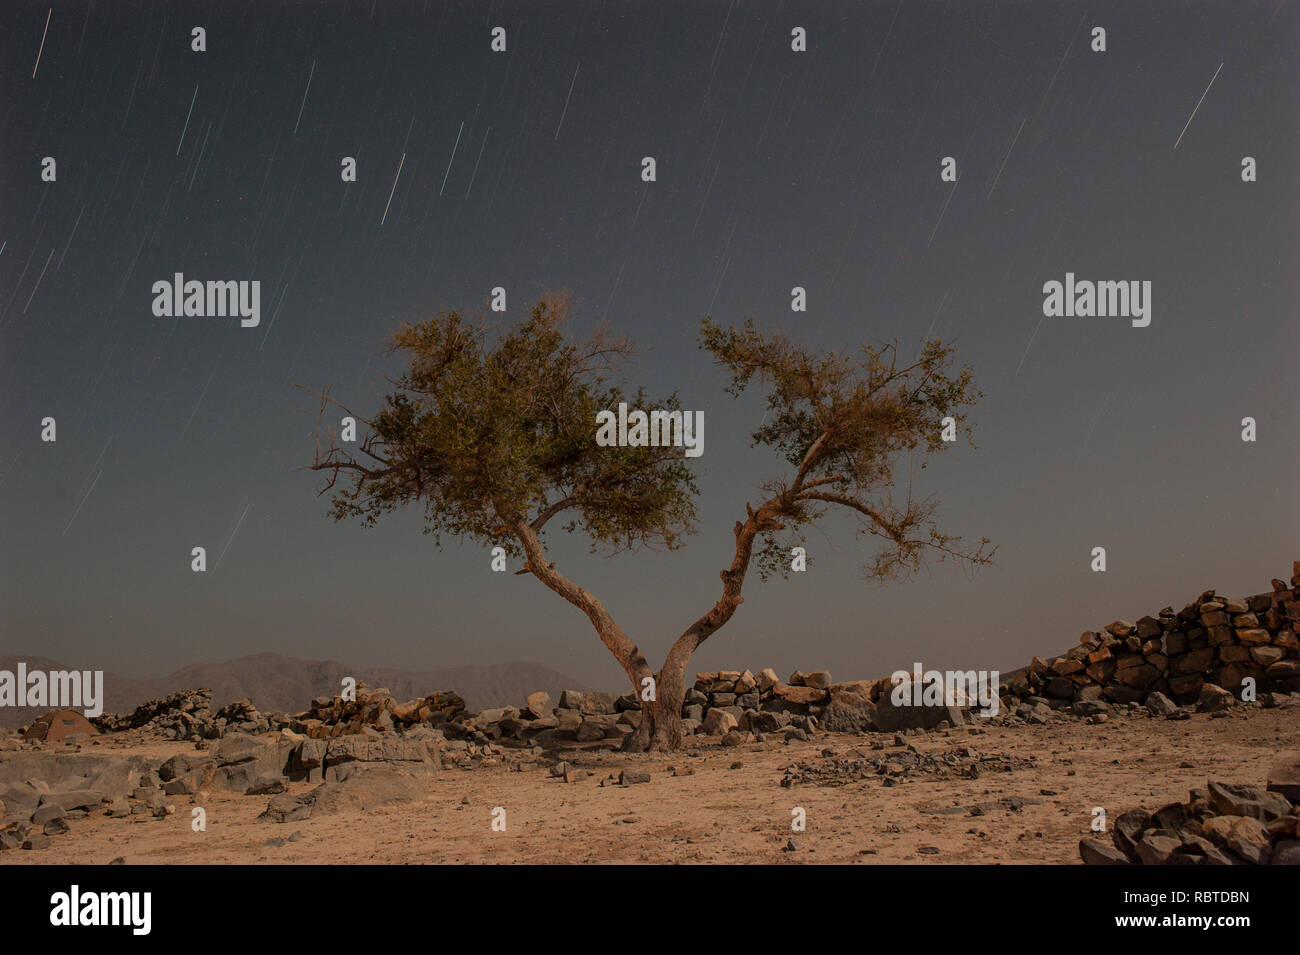 Akazien in der Wüste Stockfoto